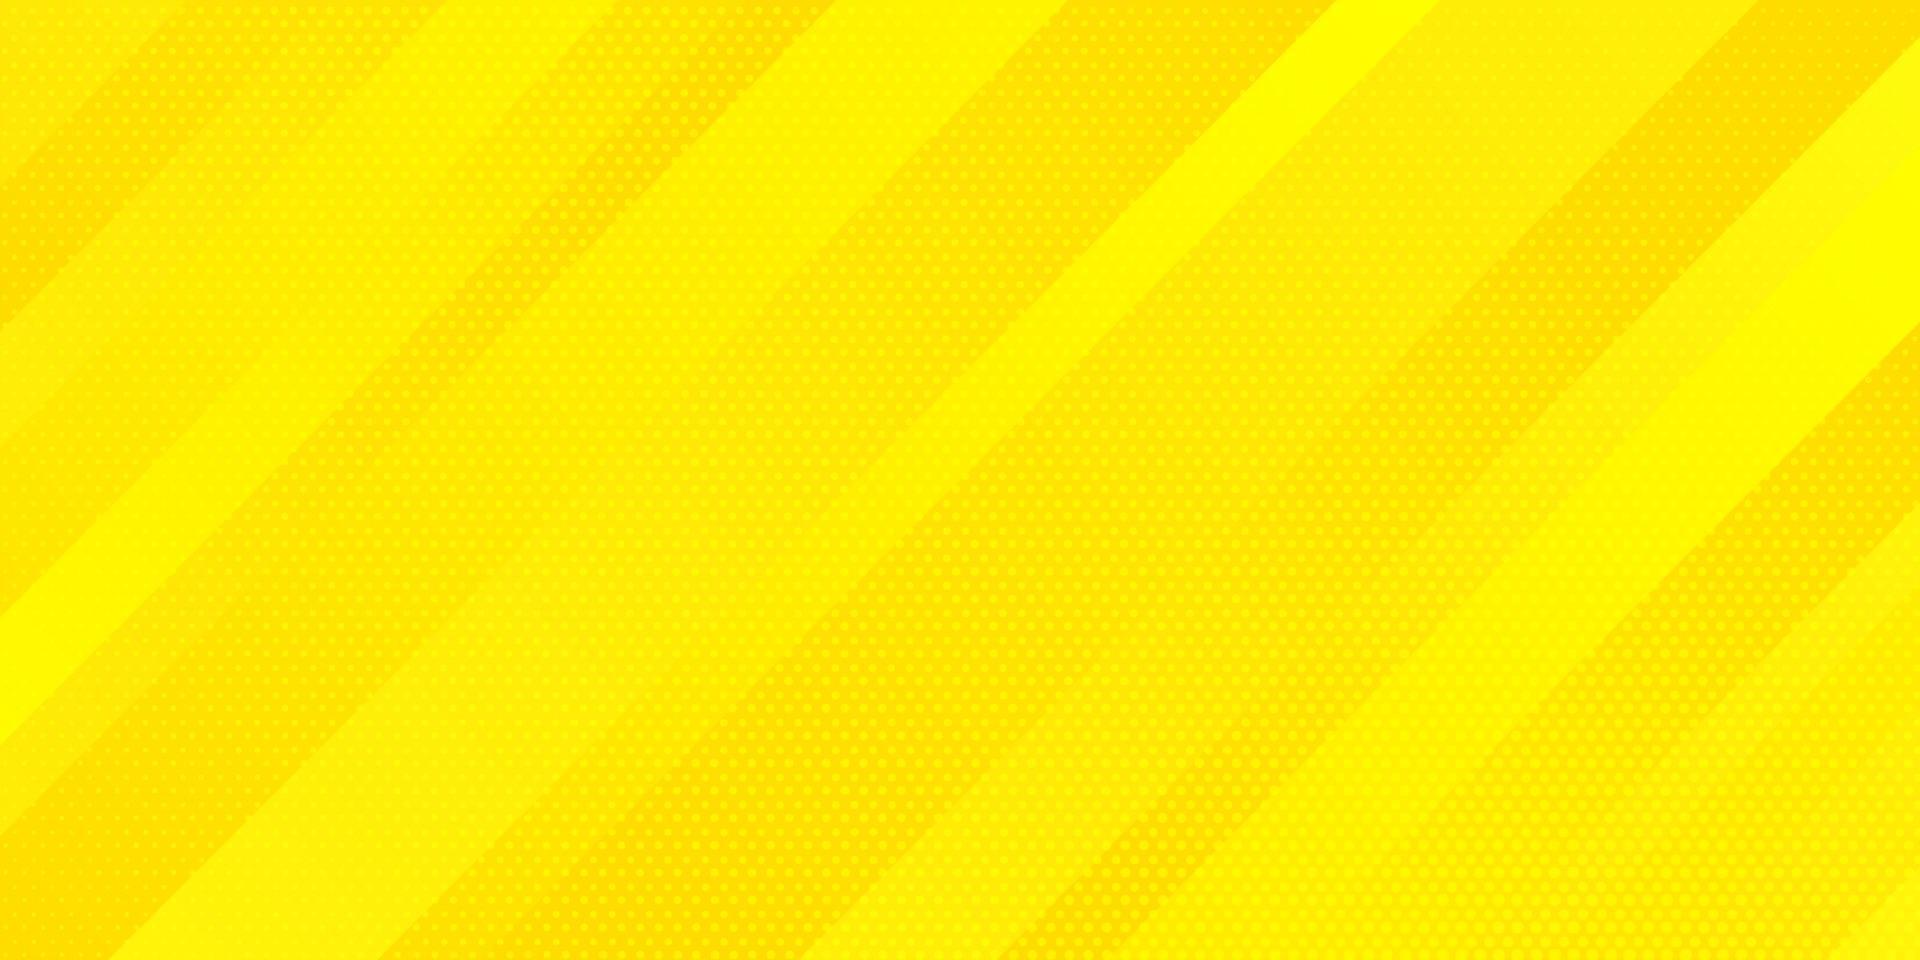 patrón geométrico minimalista textura elegante moderna. Resumen de color amarillo brillante degradado y textura de puntos estilo de semitono con líneas oblicuas rayas de fondo. ilustración vectorial vector